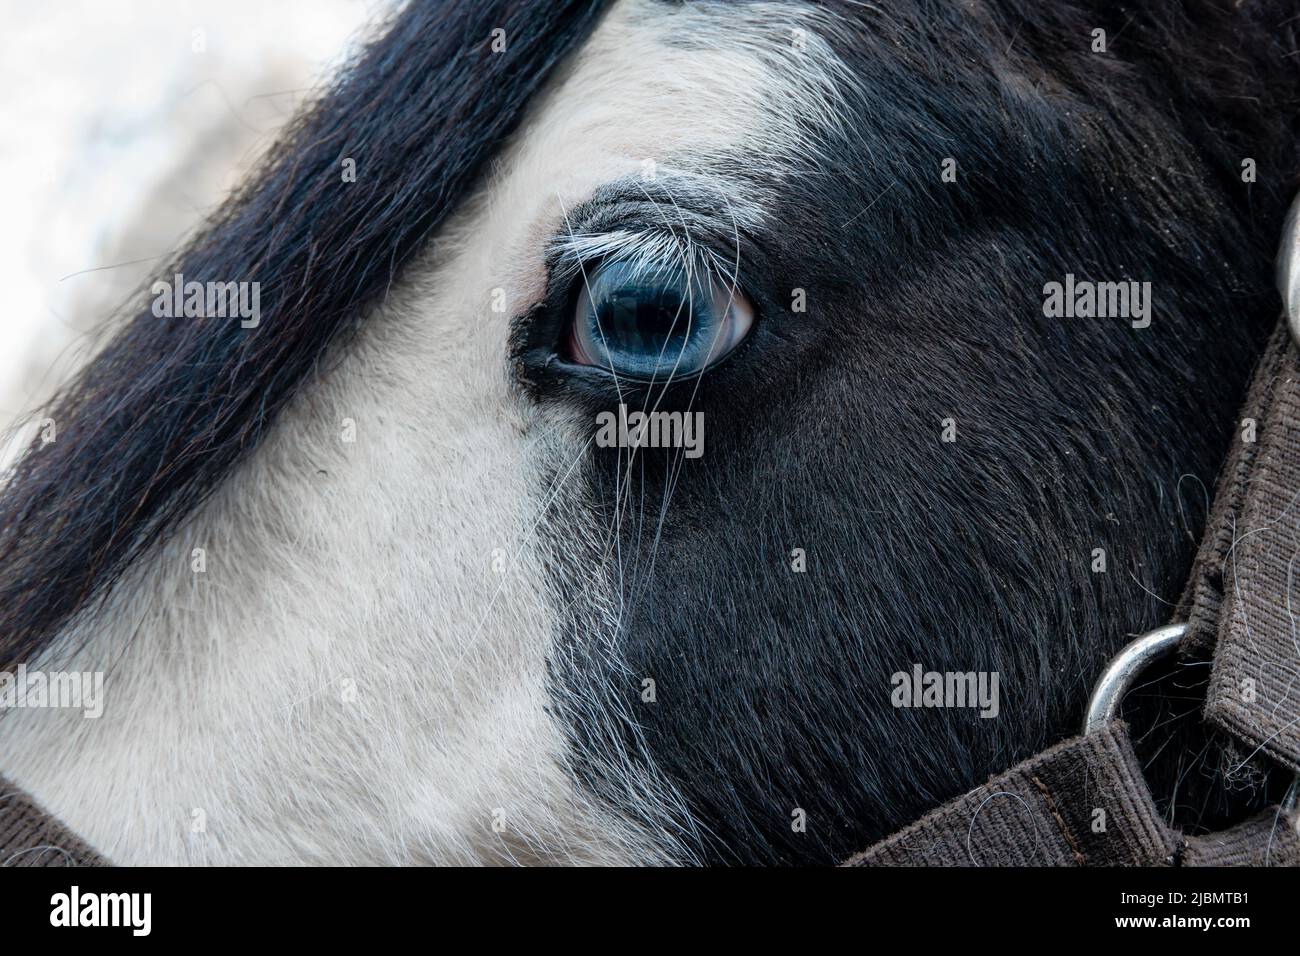 Profil rapproché de la face et du front du cheval de l'épi de gitan piébald montrant un œil de mur bleu Banque D'Images